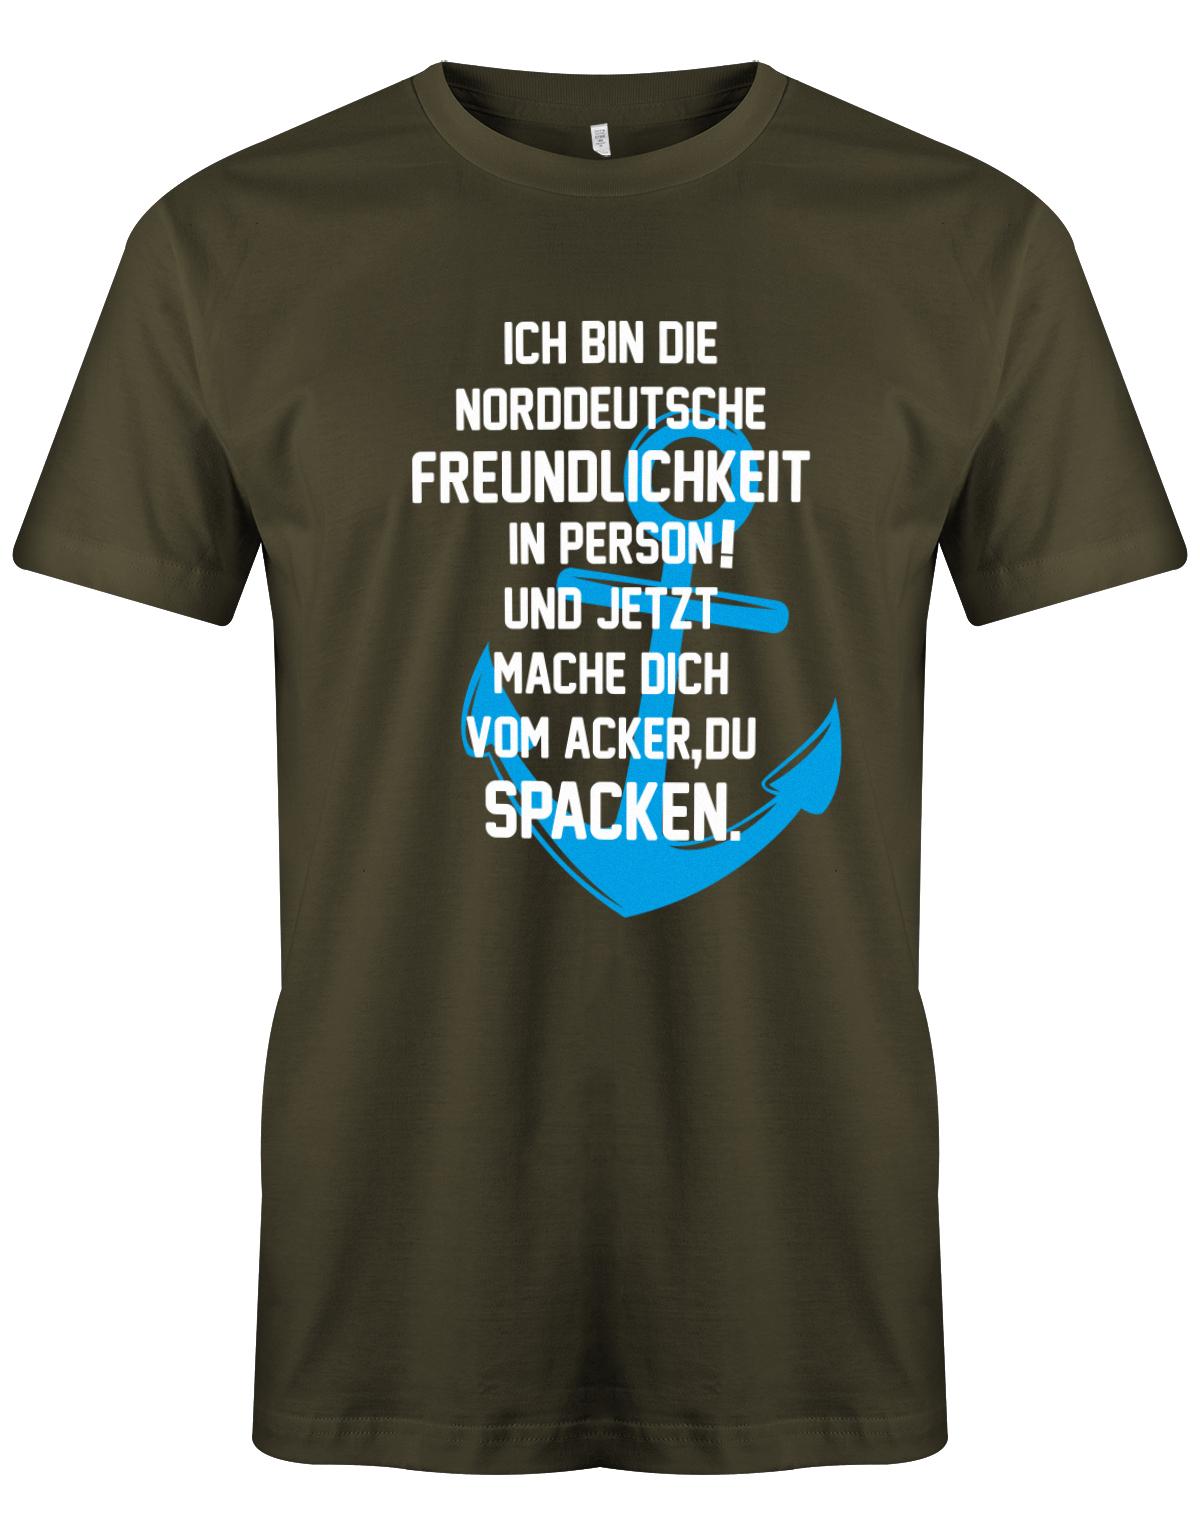 Ich bin die norddeutsche Freundlichkeit in Person - Mach dich vom Acker zu Spacken - Herren T-Shirt Army